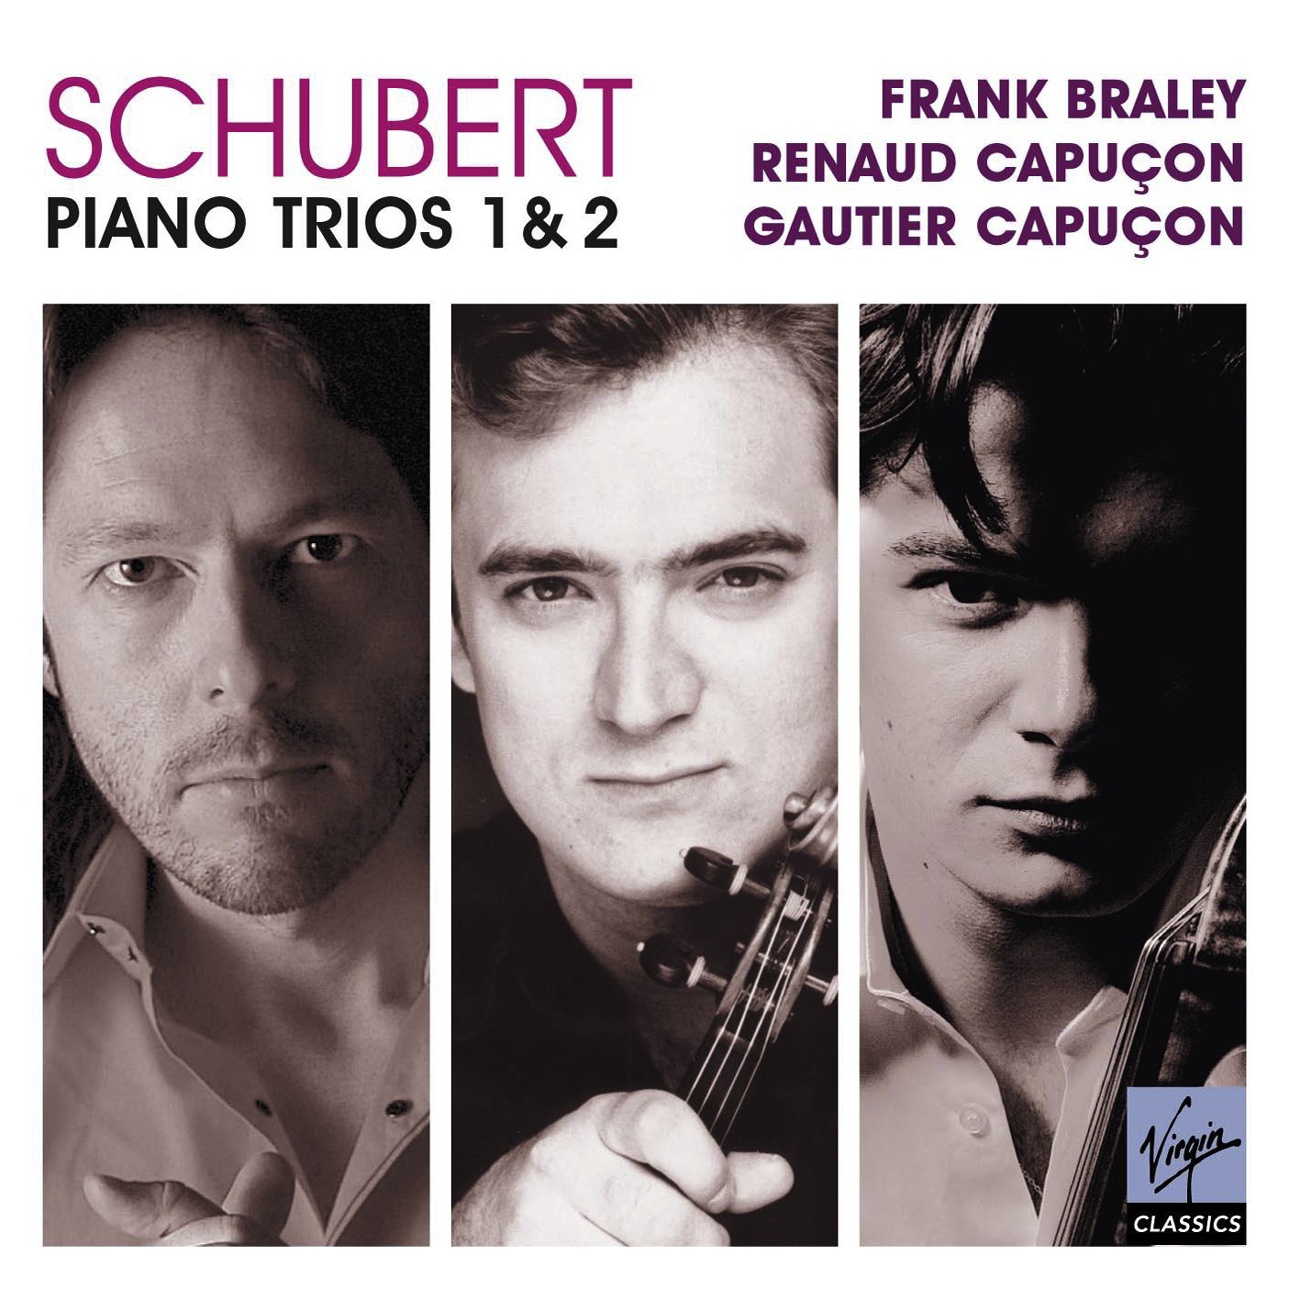 Piano Trio No. 2 in E flat major D.929: III.     Scherzando (Allegro molto) & Trio